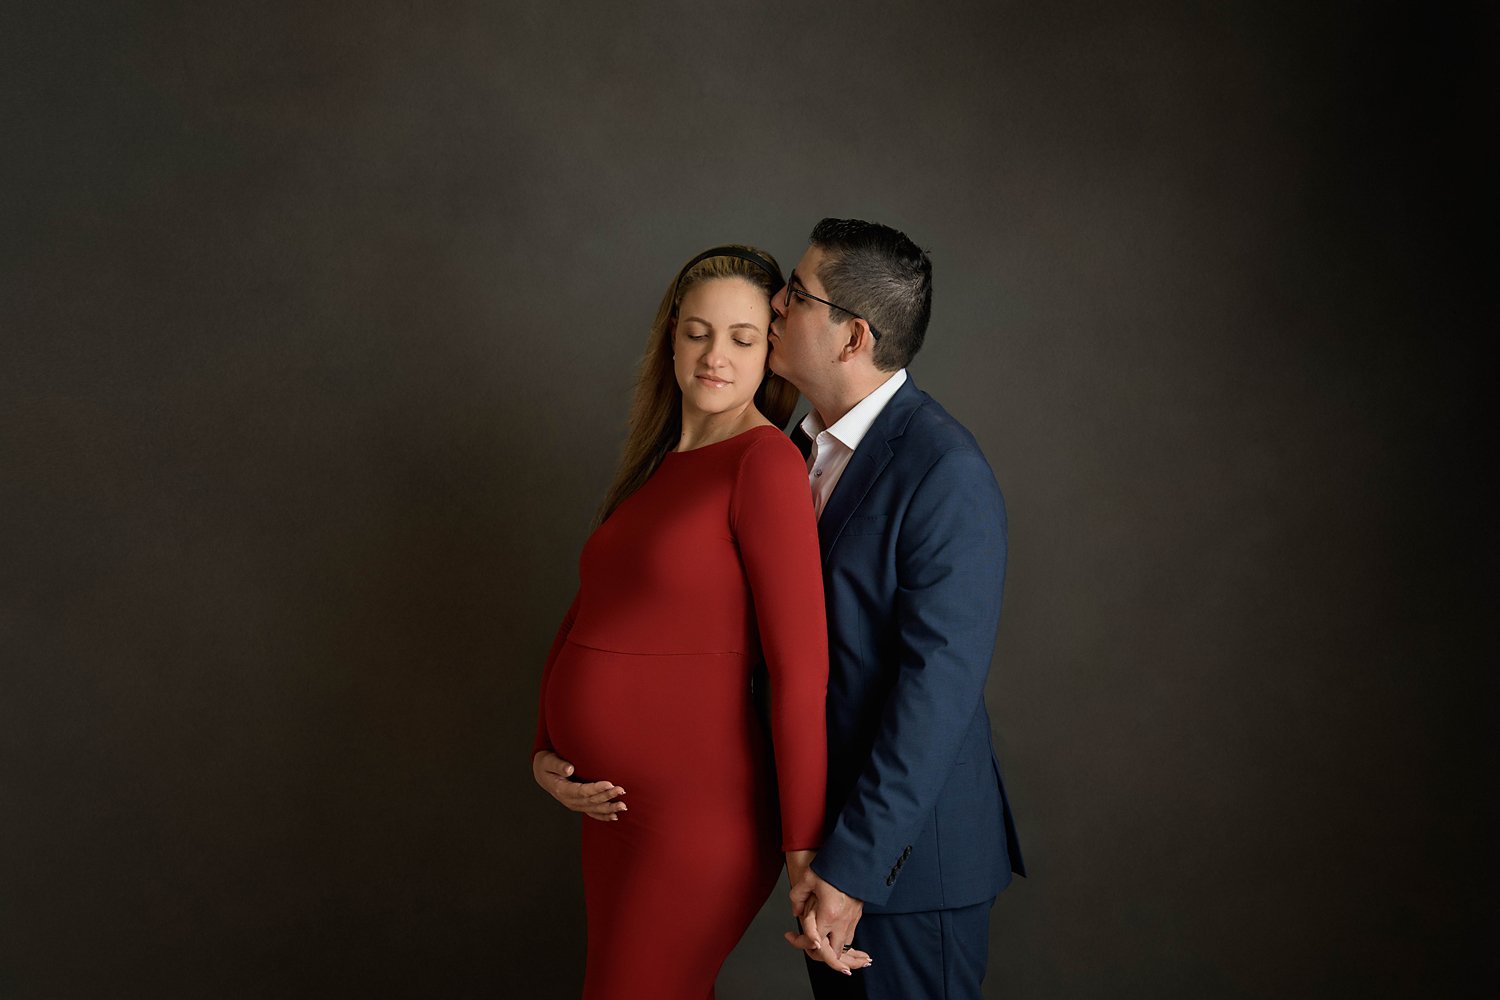 kimberly-gb-photography-maternity-maternidad-fotografia-embarazo-bebe-fotografo-puerto-rico-055.jpg